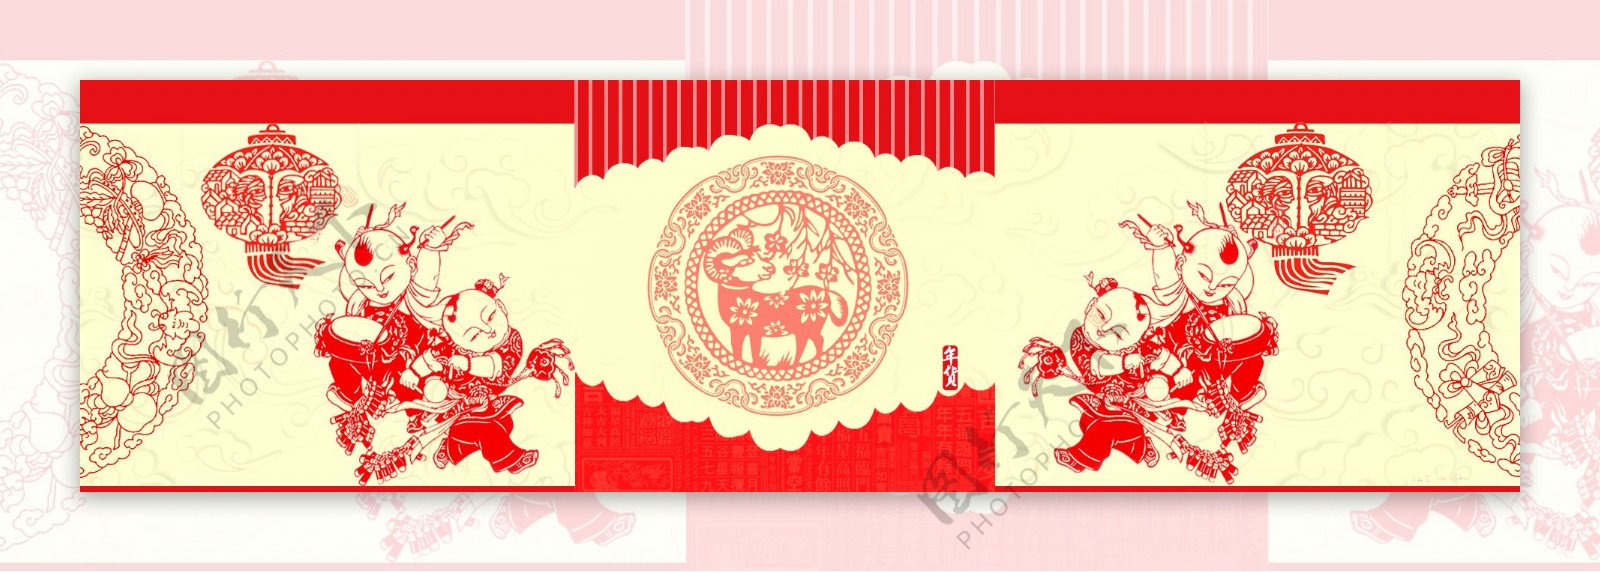 中国剪纸淘宝背景图片